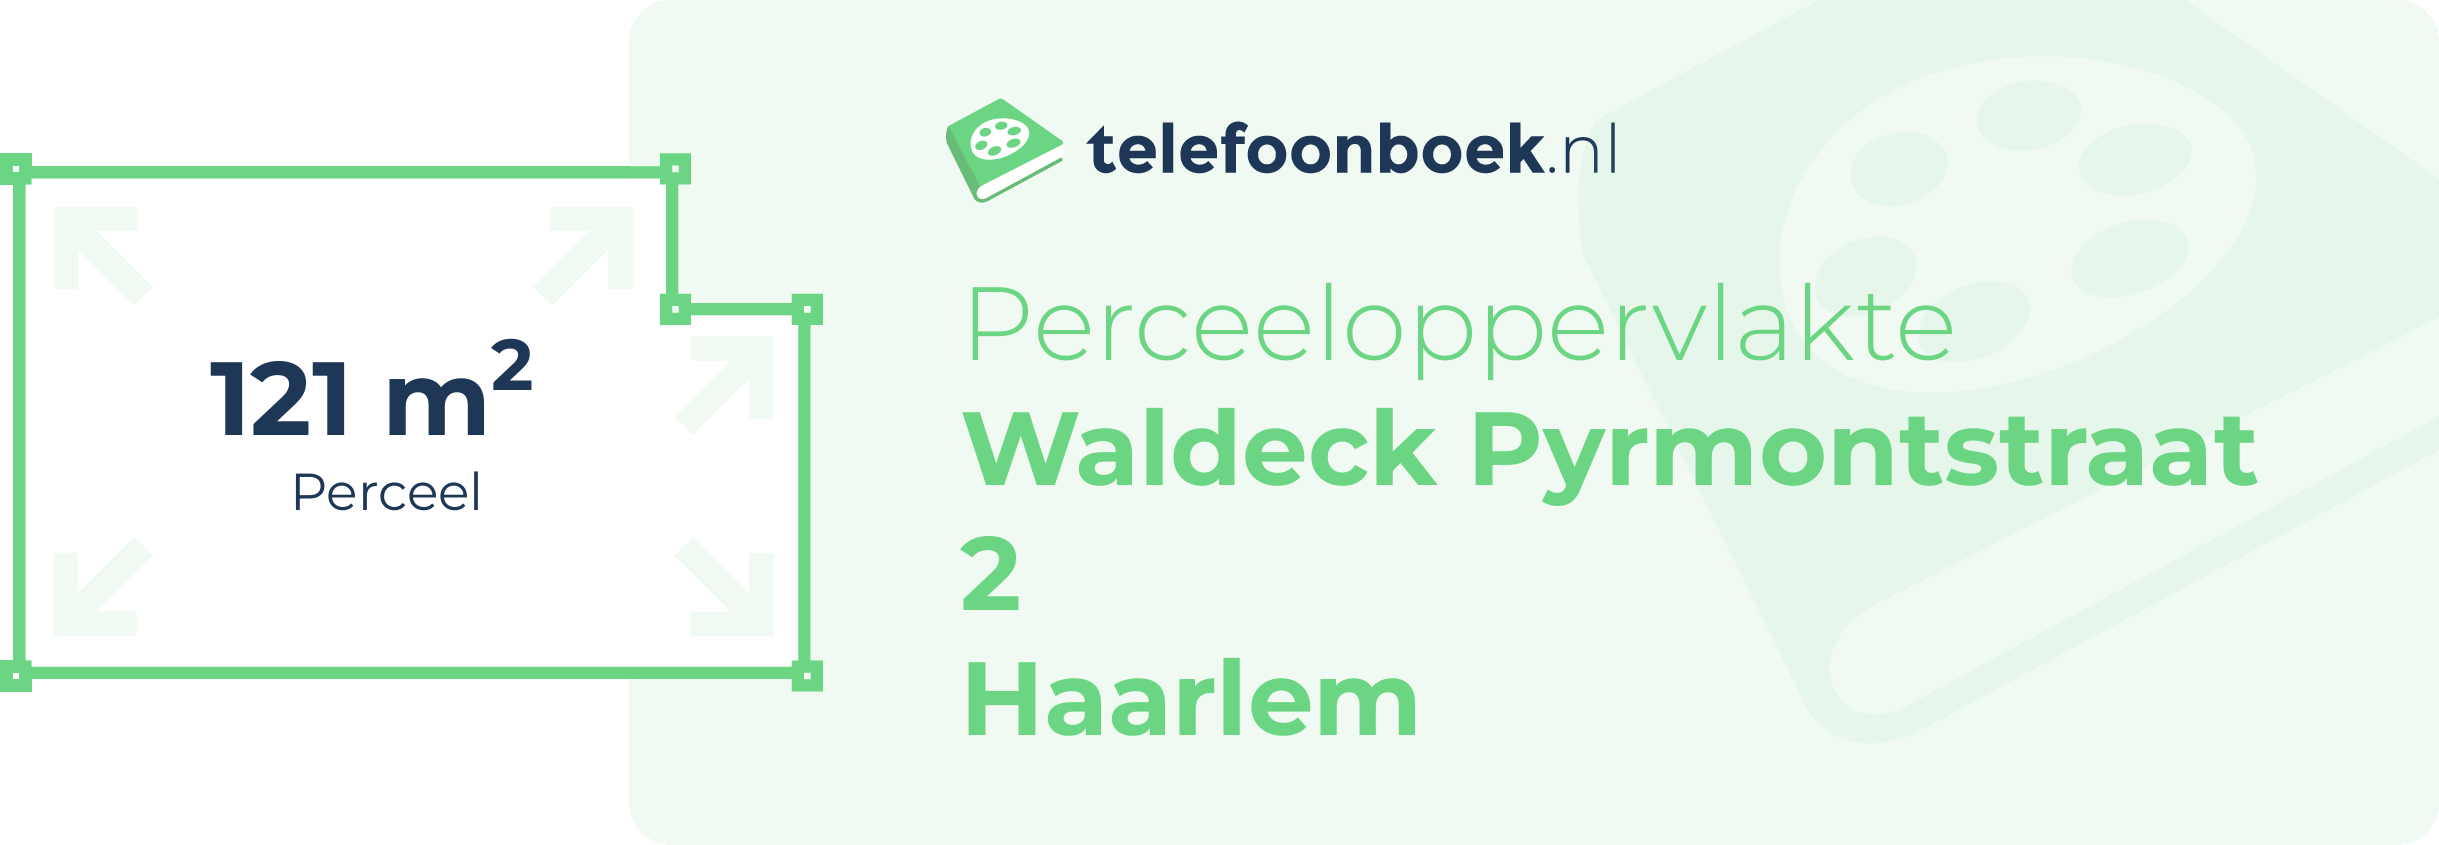 Perceeloppervlakte Waldeck Pyrmontstraat 2 Haarlem